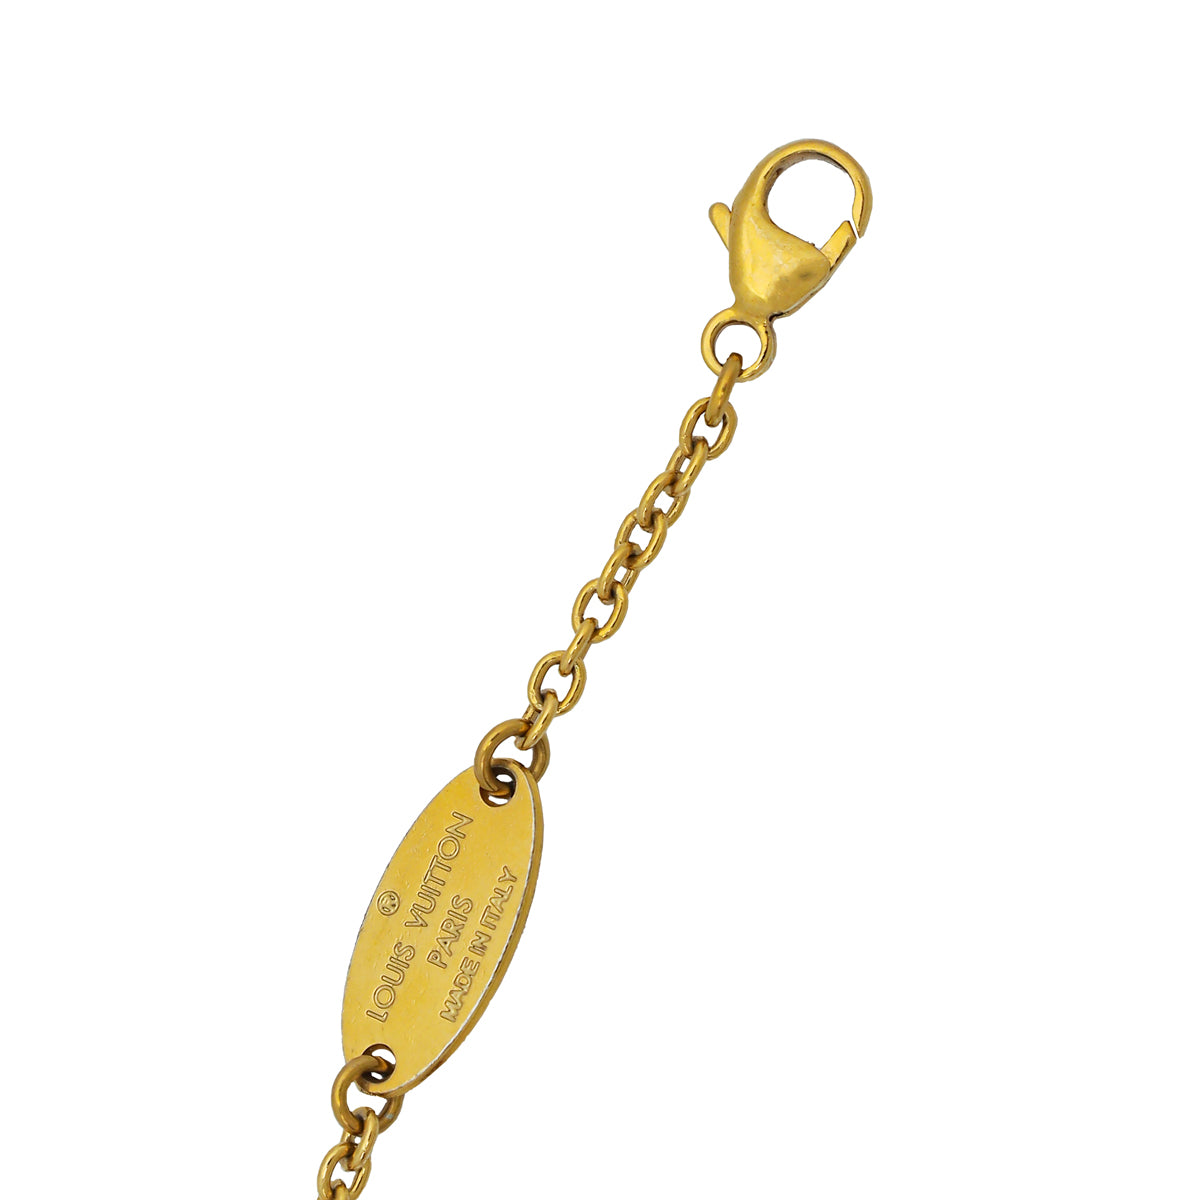 LOUIS VUITTON Bracelet M68127 Monogram Flower Gold Chain